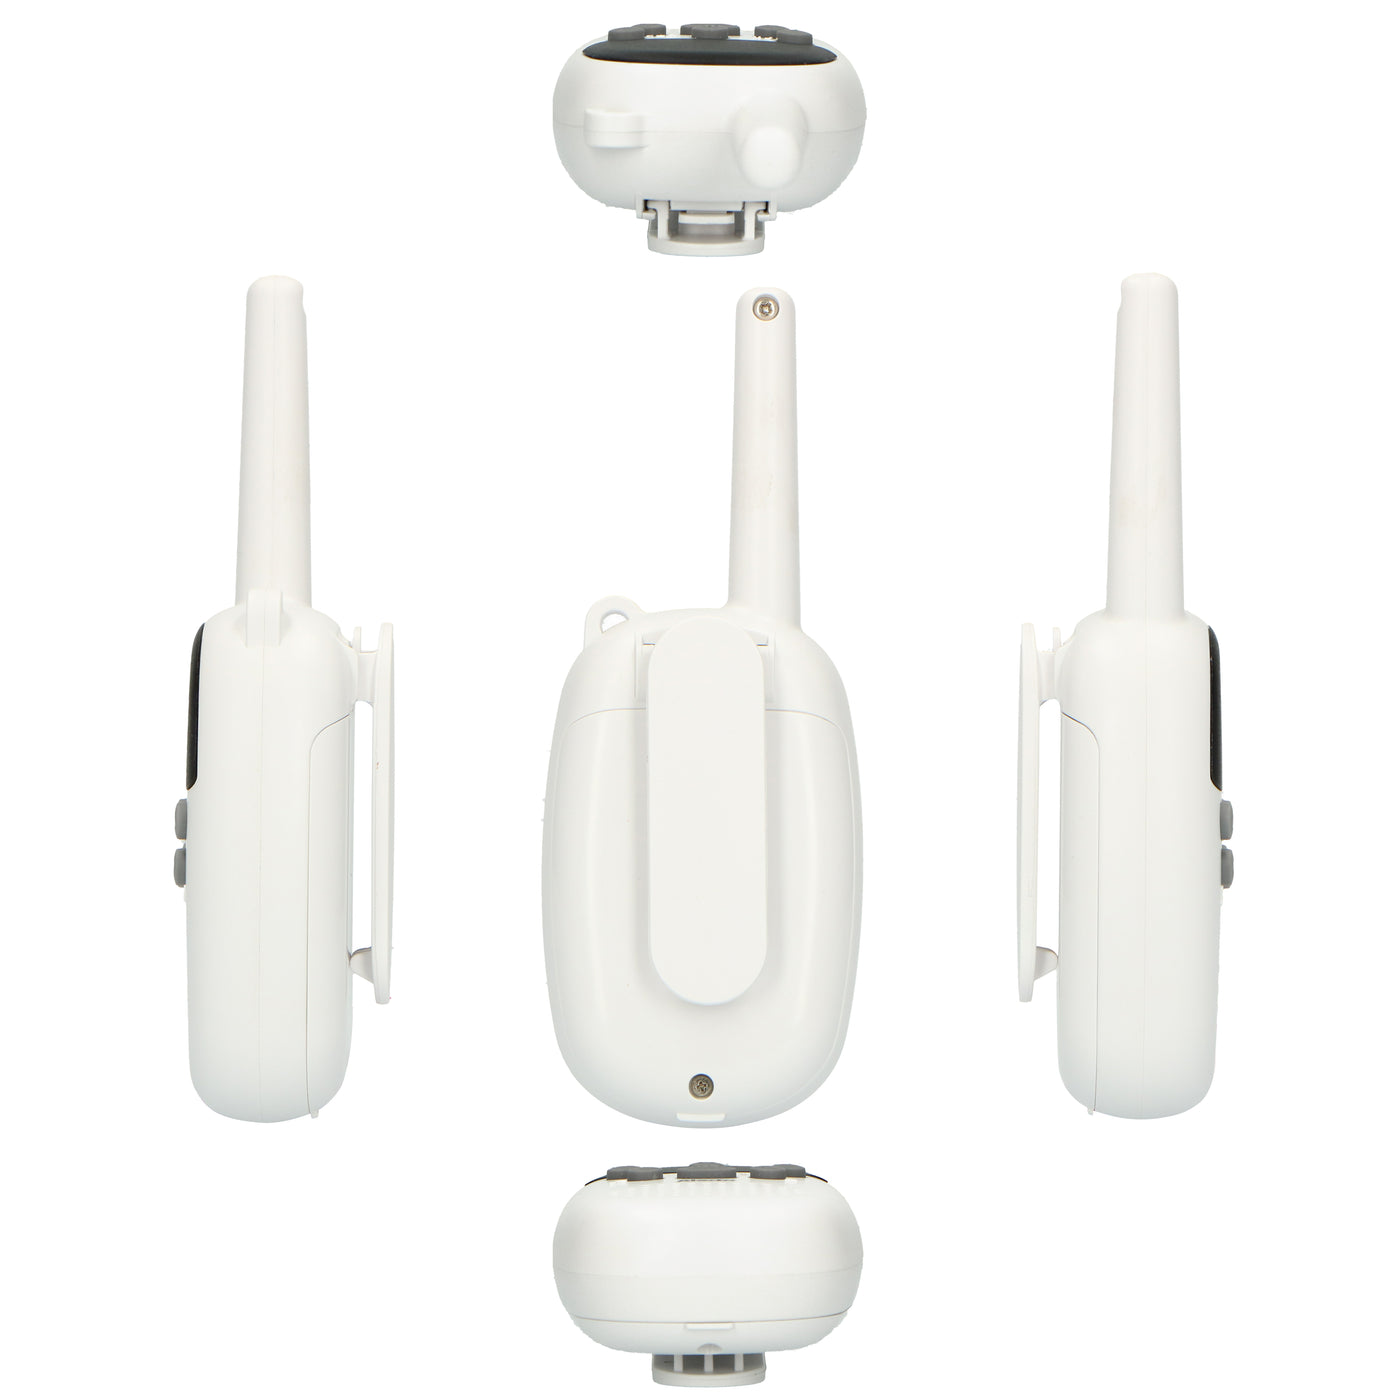 Alecto FR-09 - Set van twee walkie talkies voor kinderen -  3 km bereik, wit